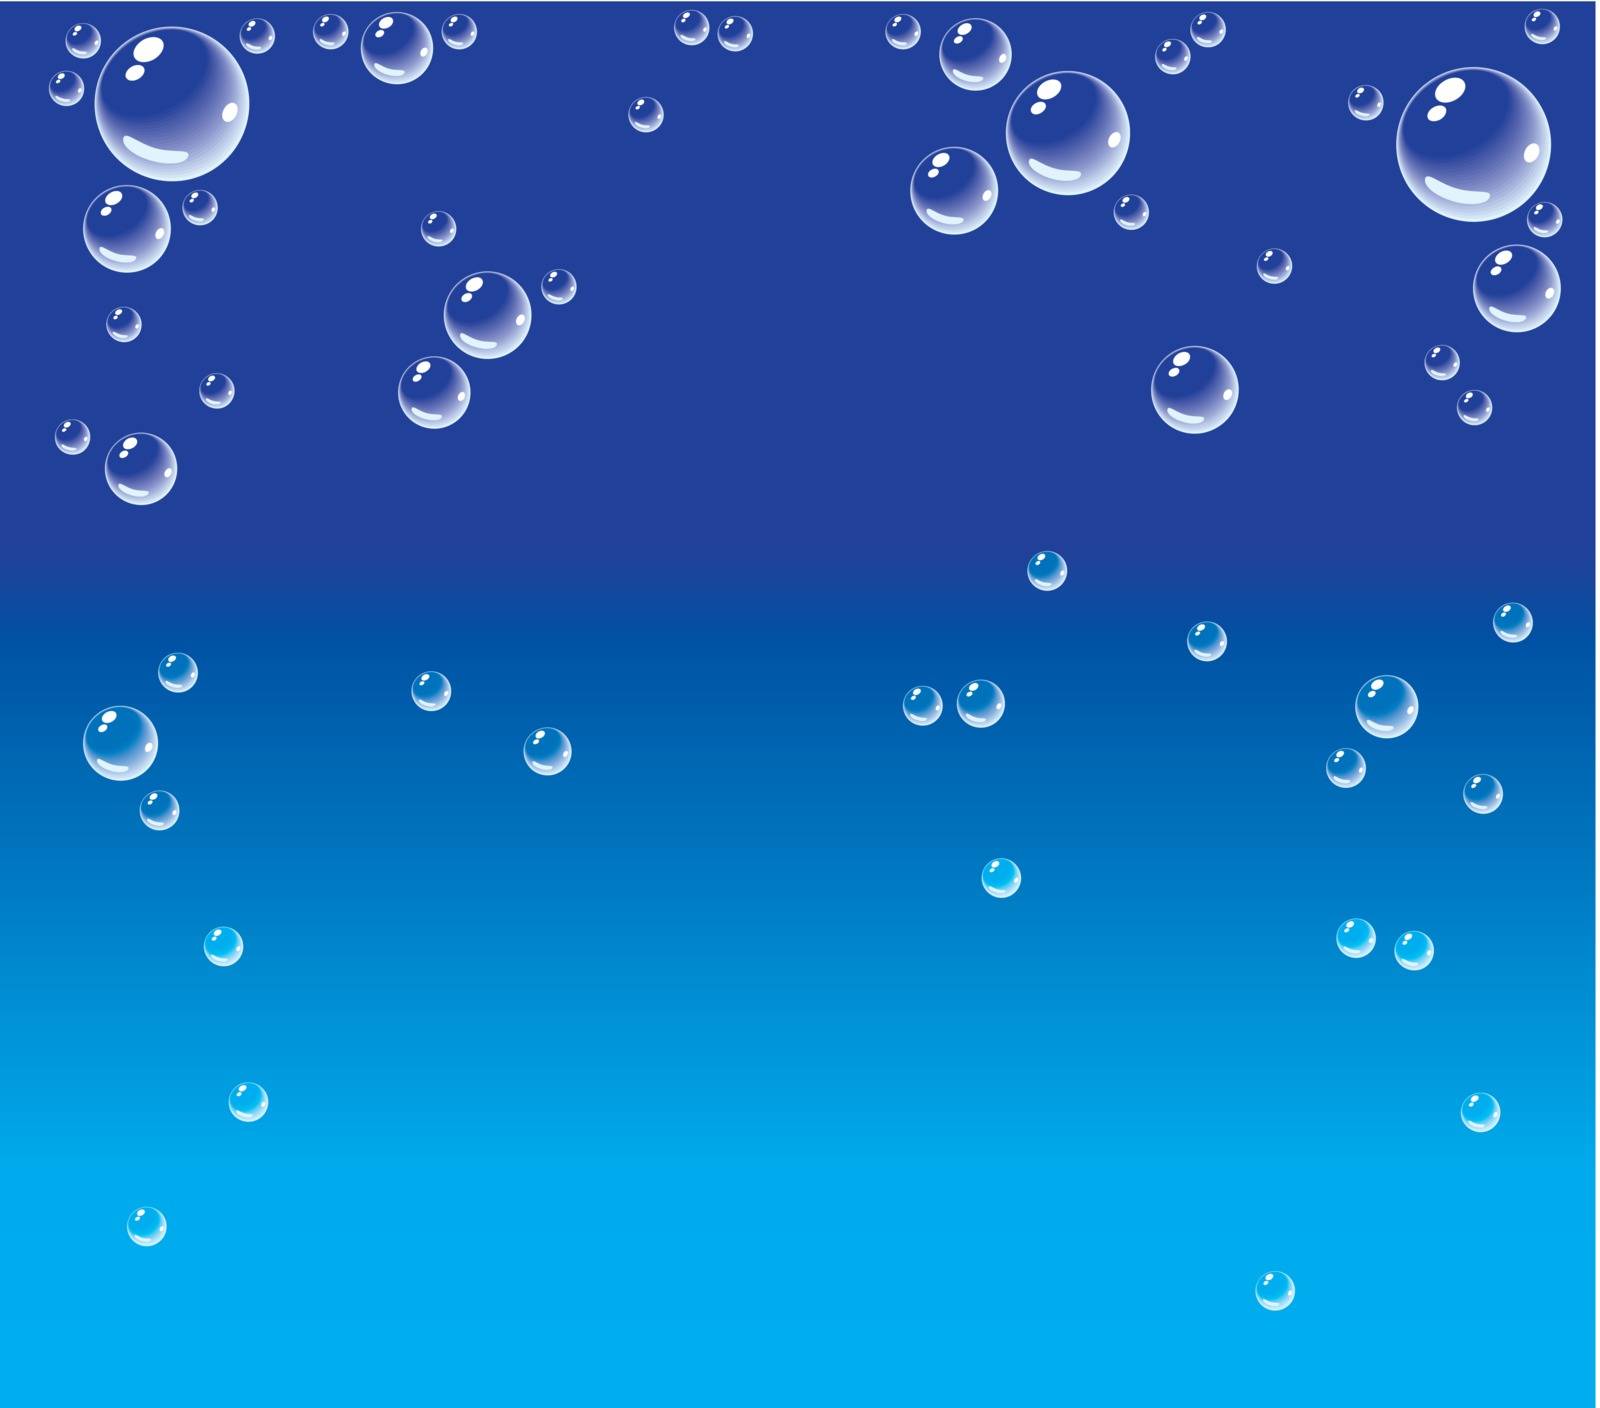 Bubbles in water by ildogesto